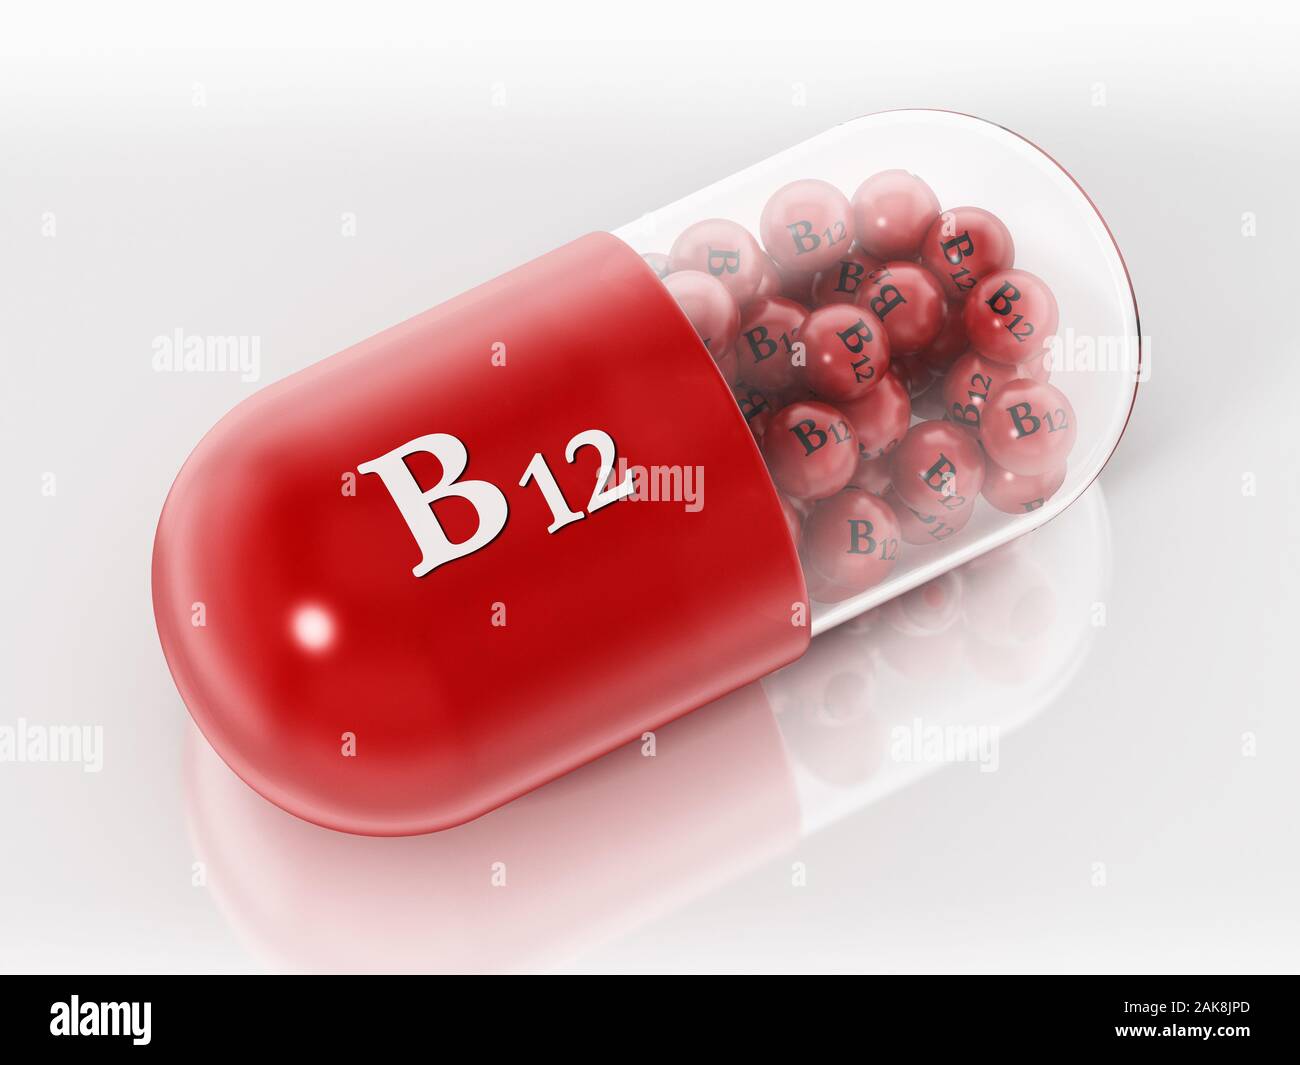 vitamin b12 pill